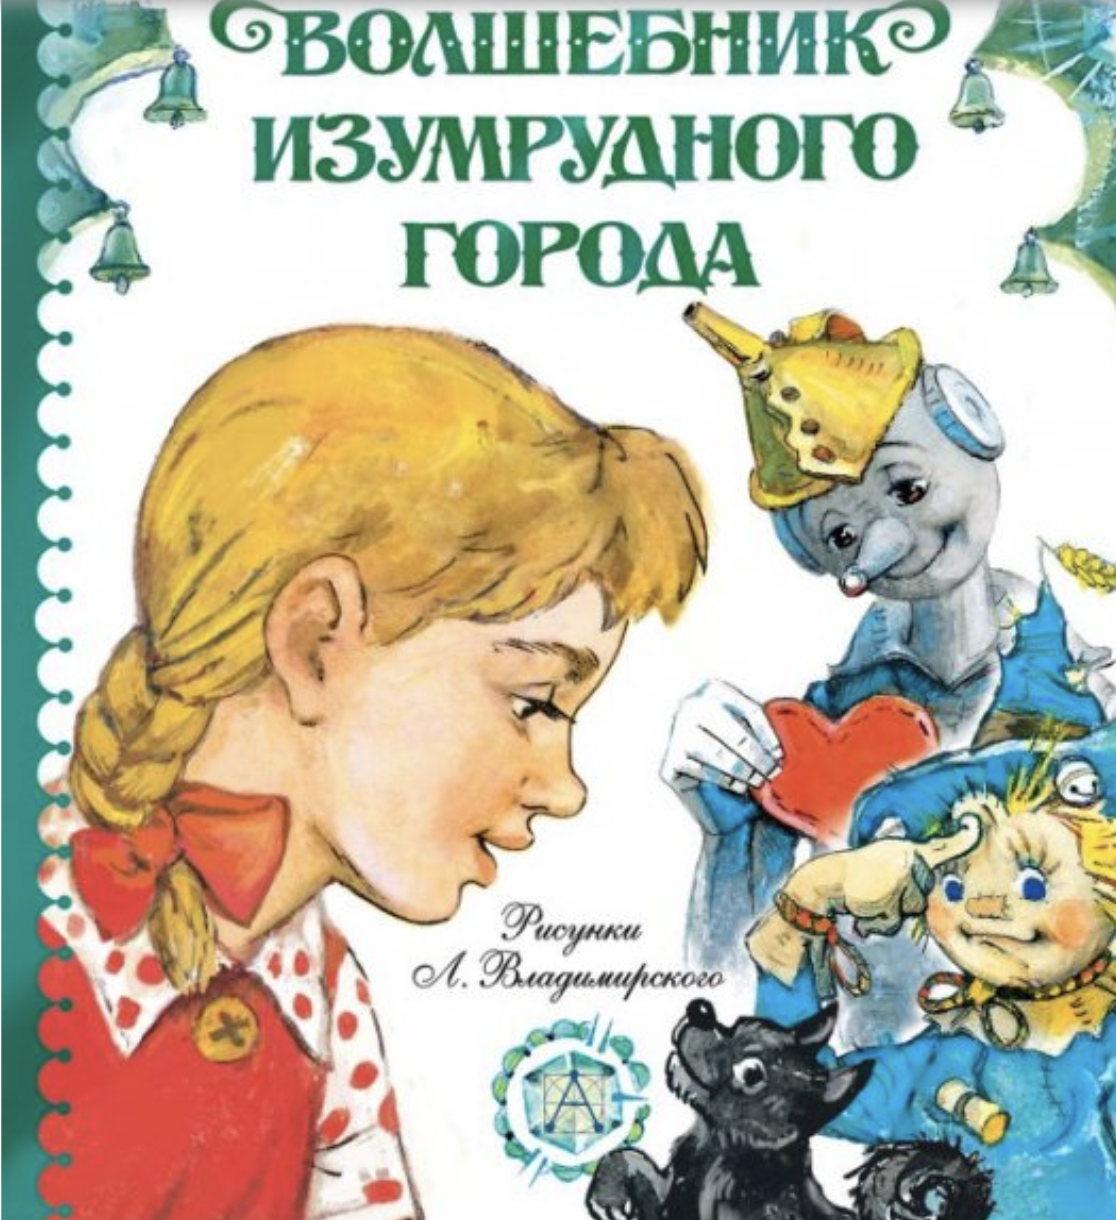 Обложка книги Волкова с иллюстрациями Л. Владимирского